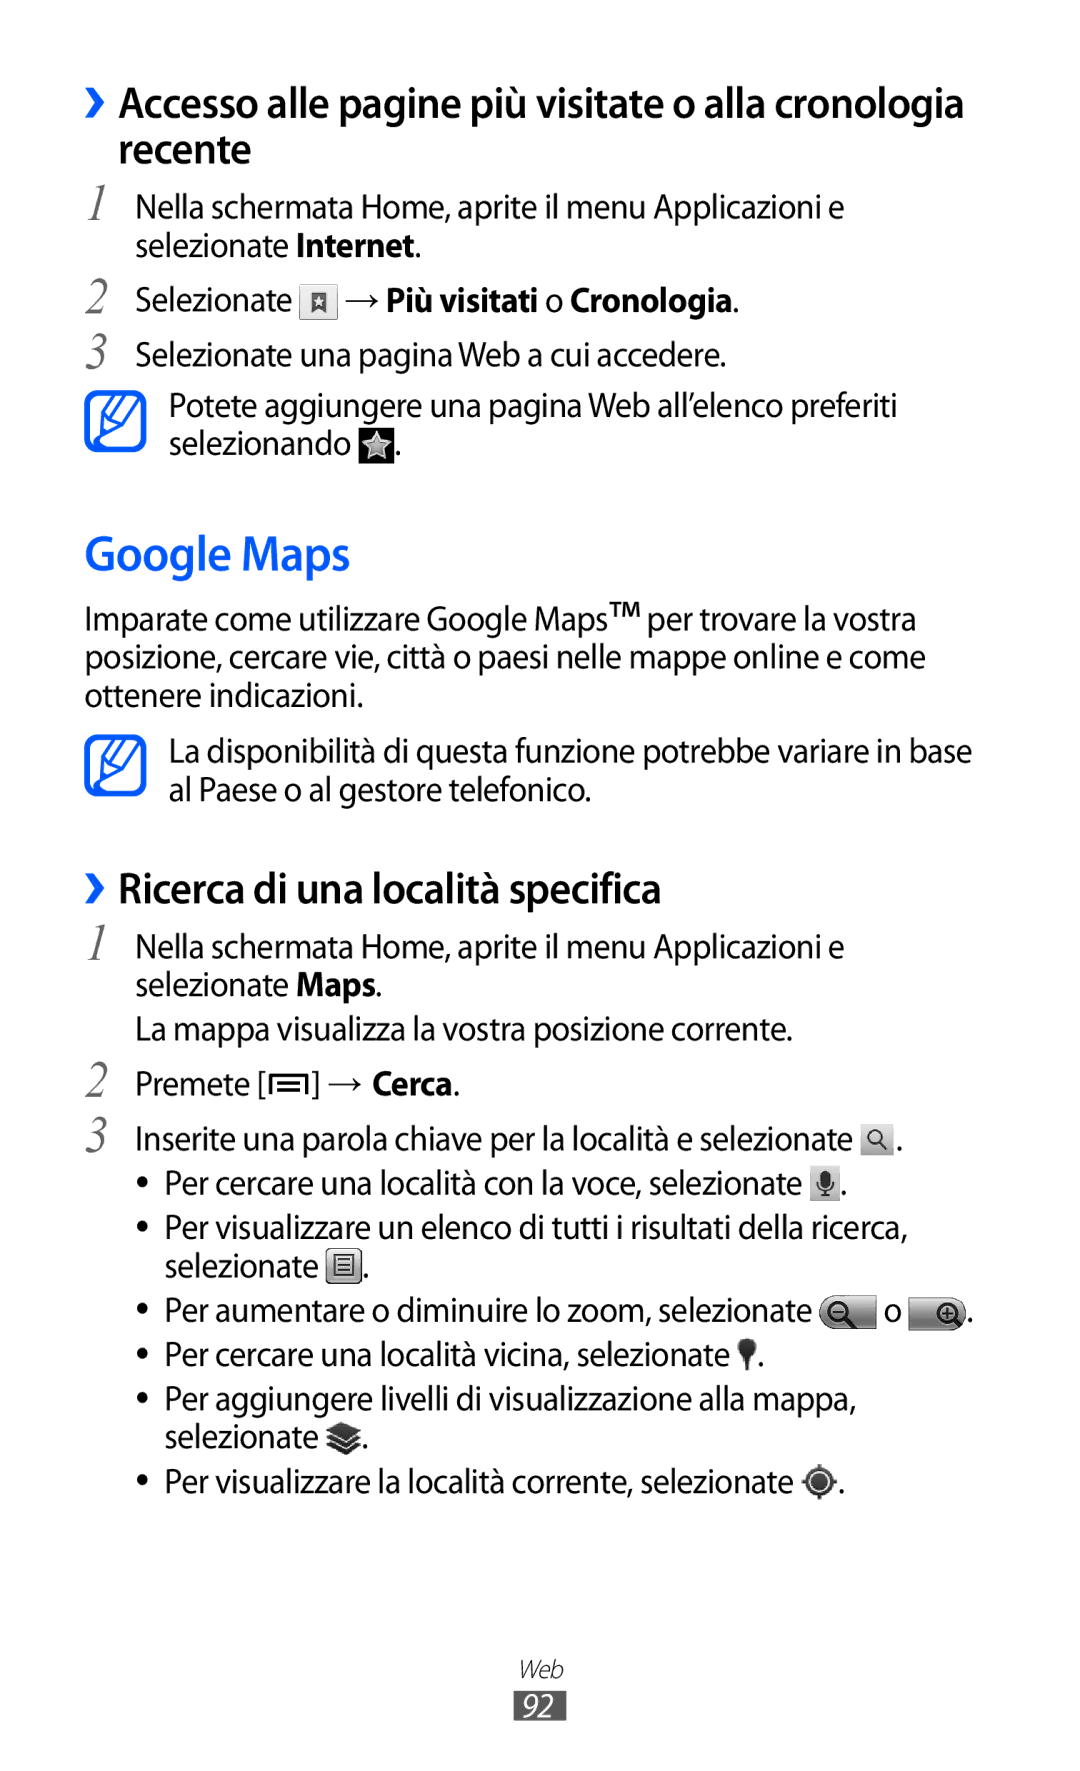 Samsung GT-I8150EWAITV manual Google Maps, ››Ricerca di una località specifica, Selezionate → Più visitati o Cronologia 